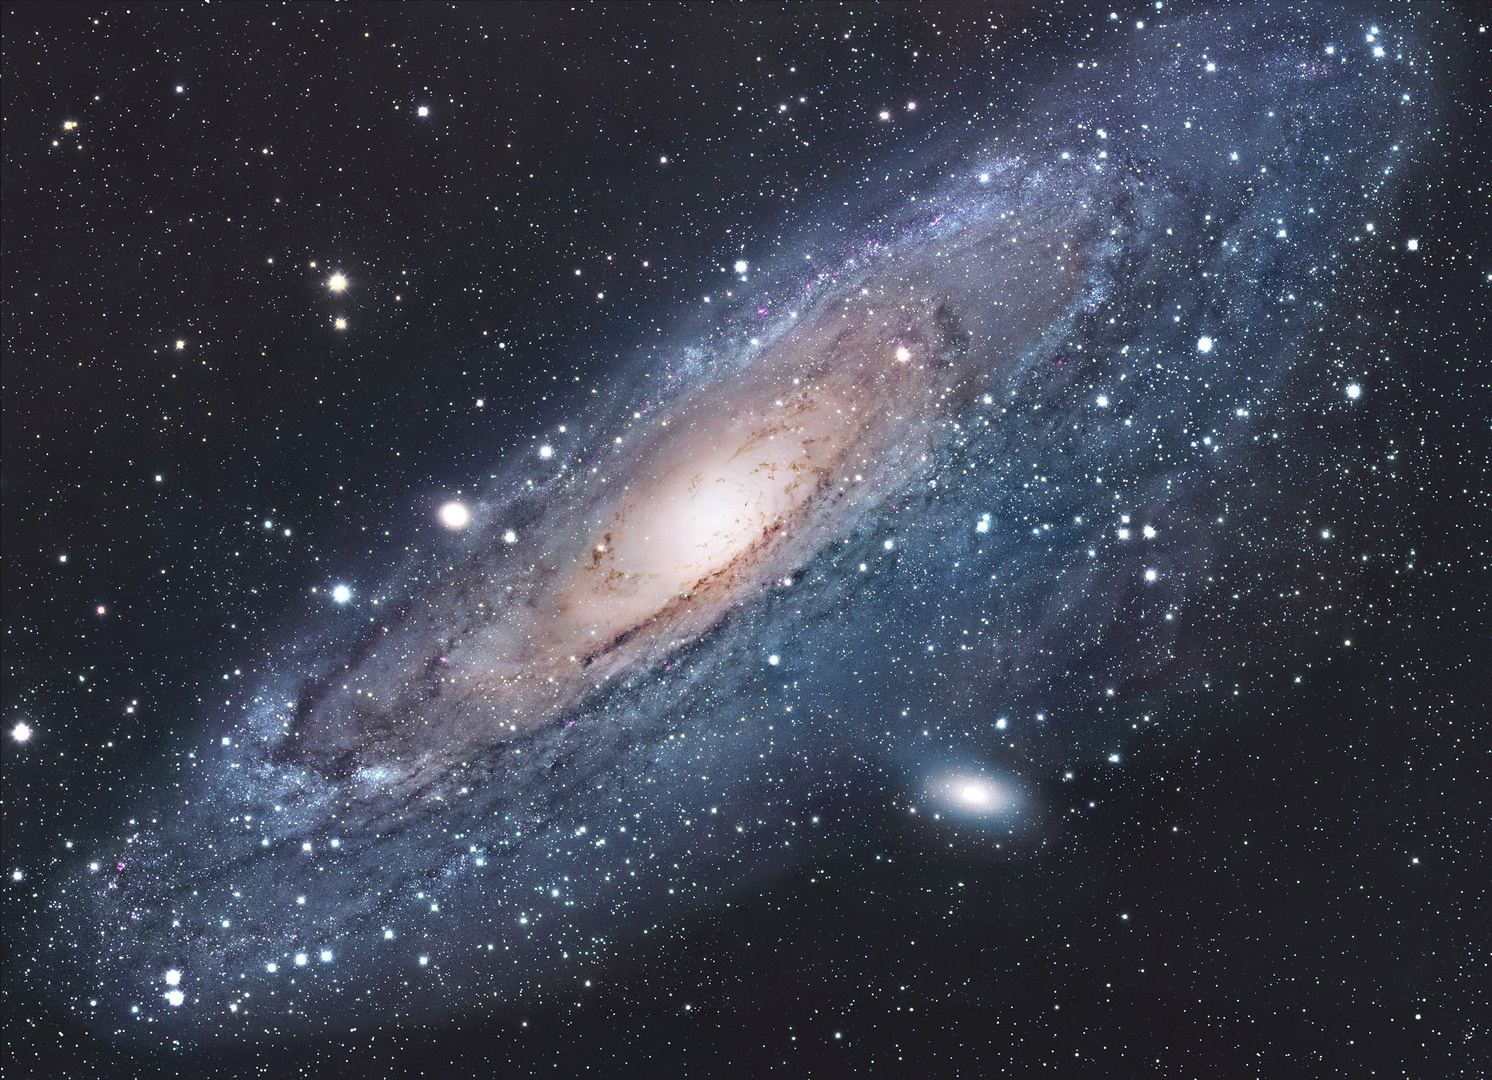 M 31 - Andromeda